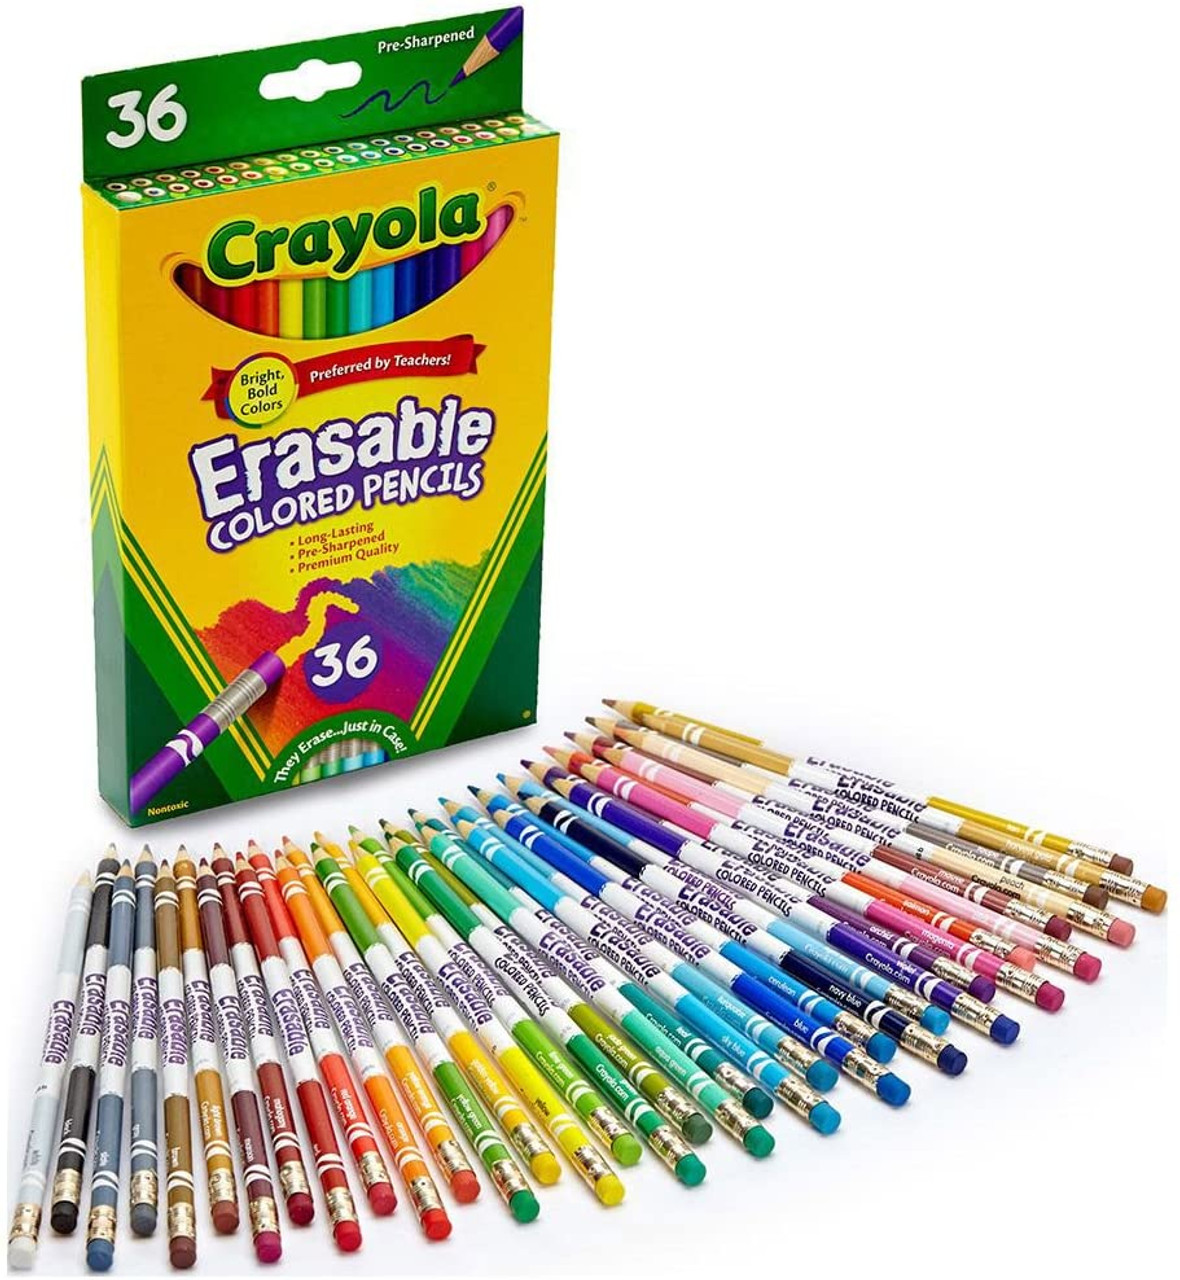 Crayola 24 ct. Erasable Colored Pencils